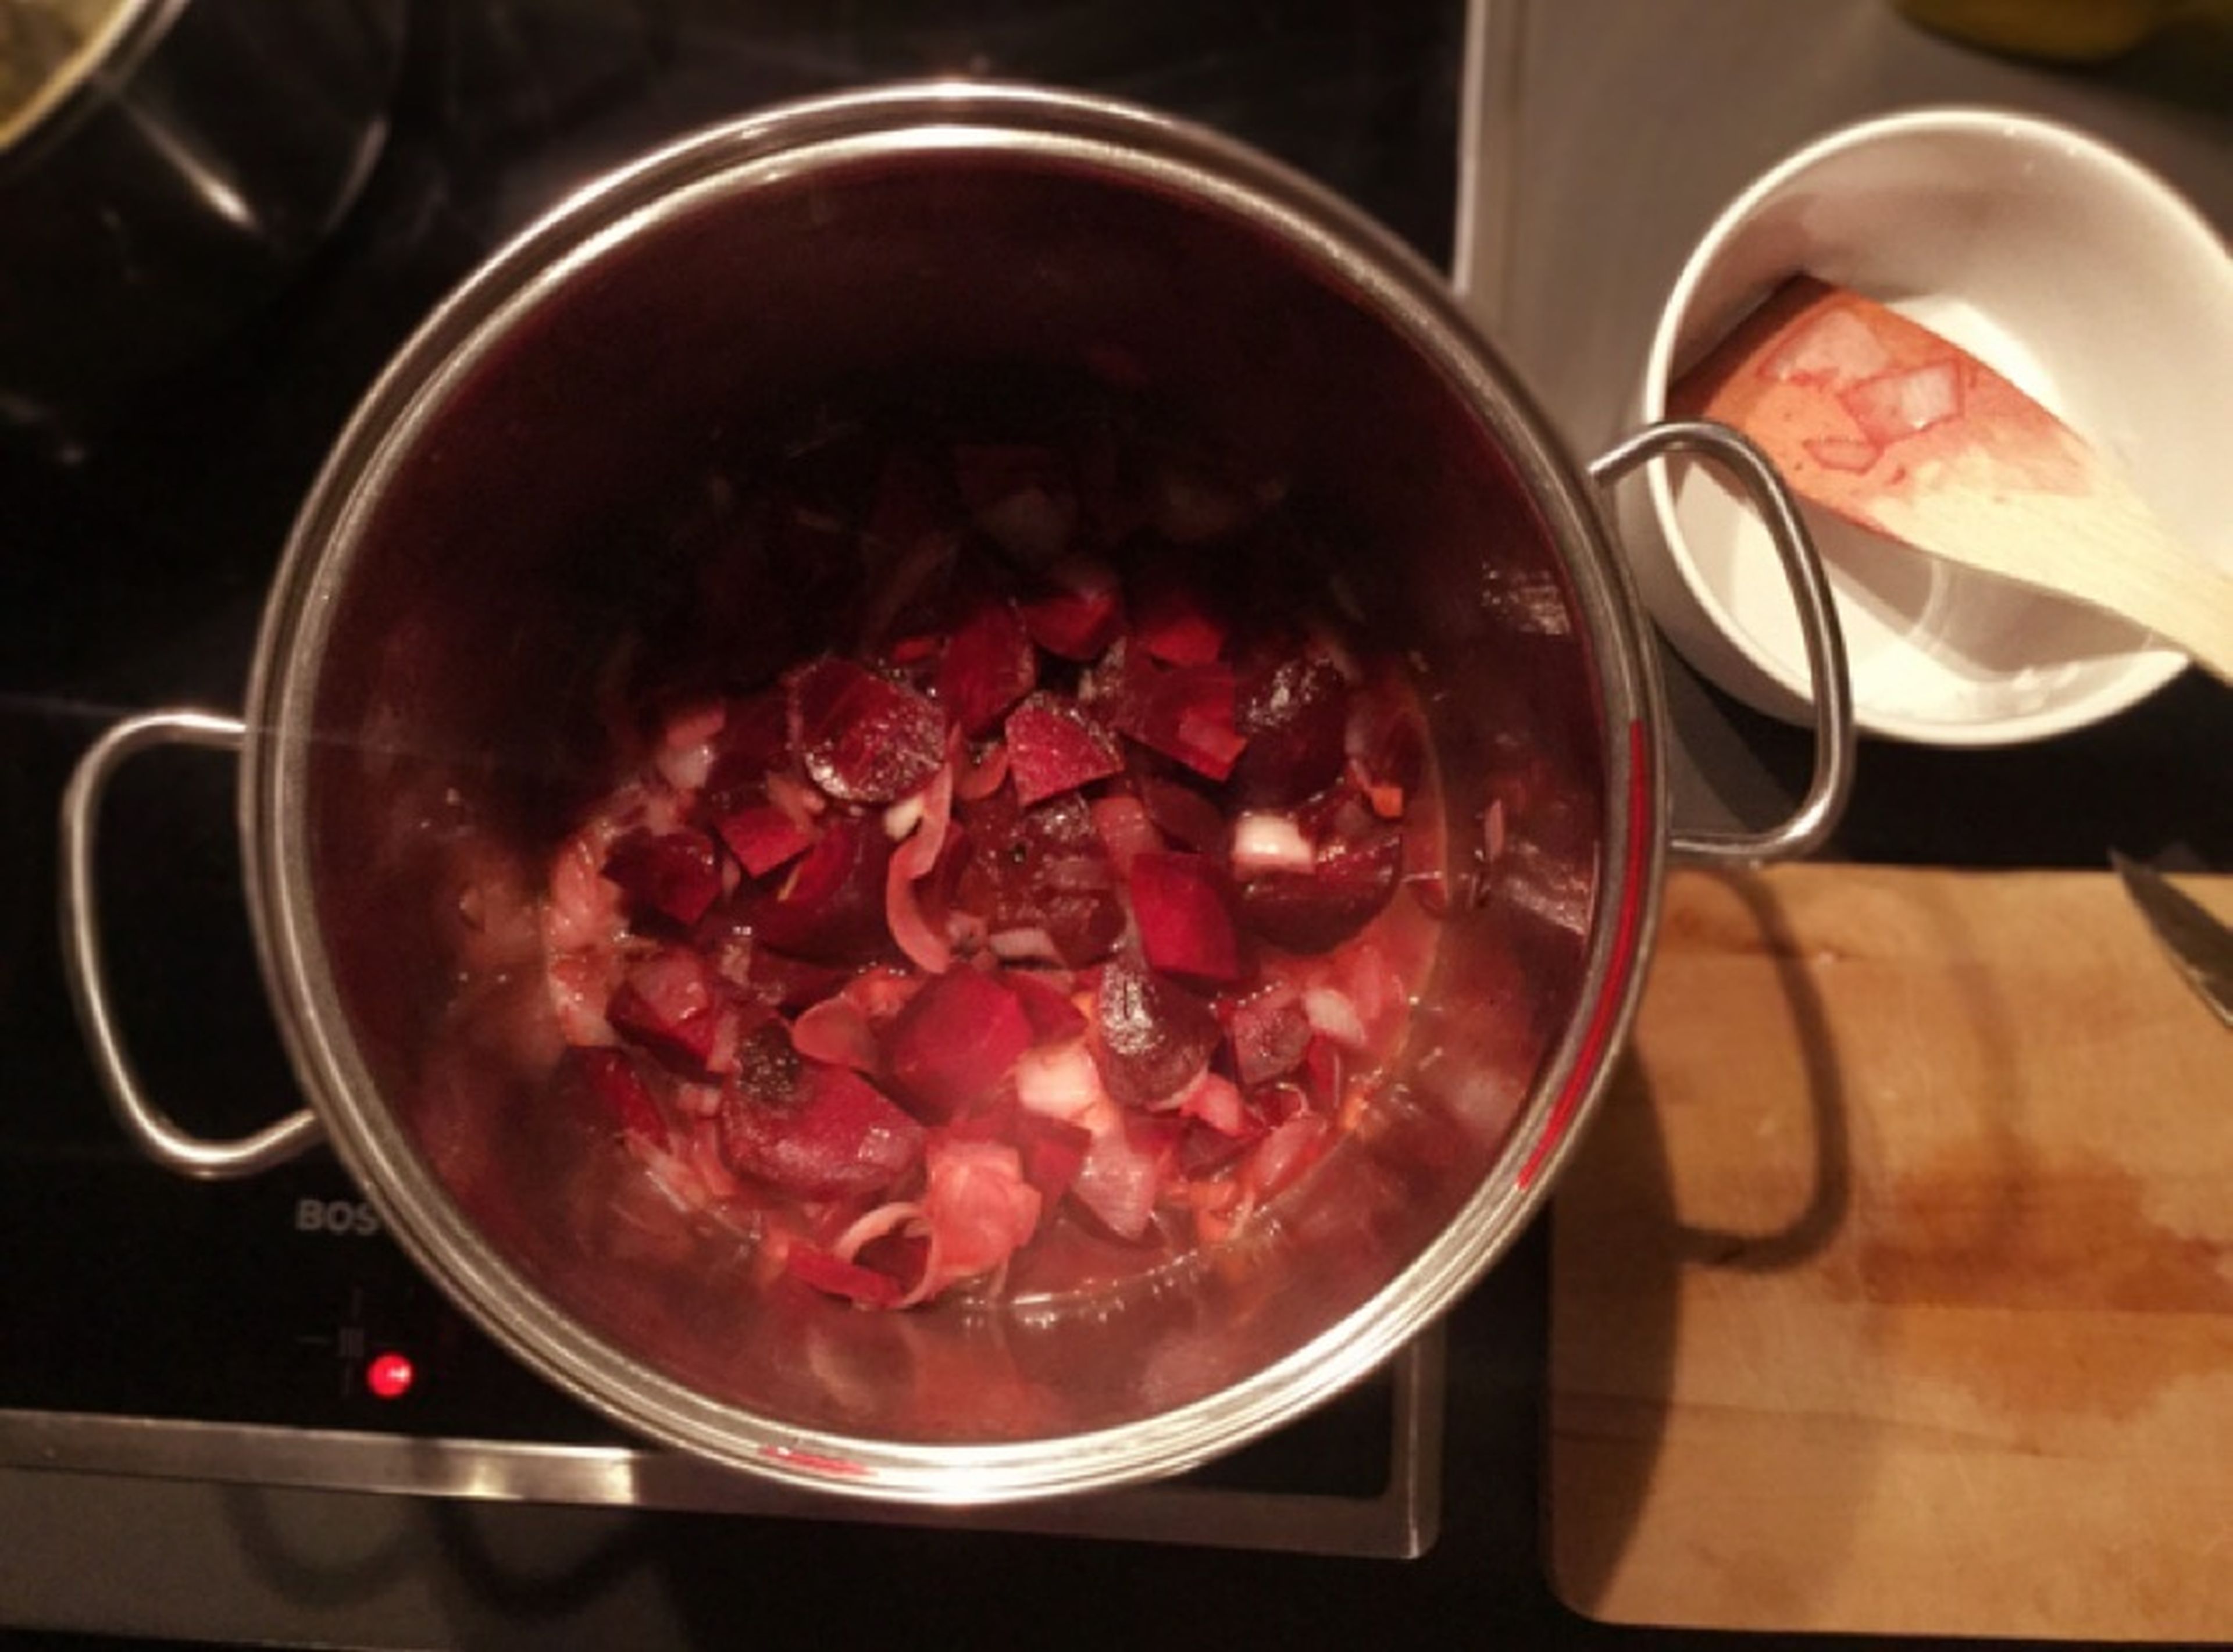 In einem großem Topf Öl erhitzen und die Zwiebeln, Ingwer und Chilipulver anschwitzen. Sobald die Zwiebeln glasig werden, die Rote Bete dazu geben, etwas anbraten, mit Weißwein ablöschen und etwas kochen lassen.